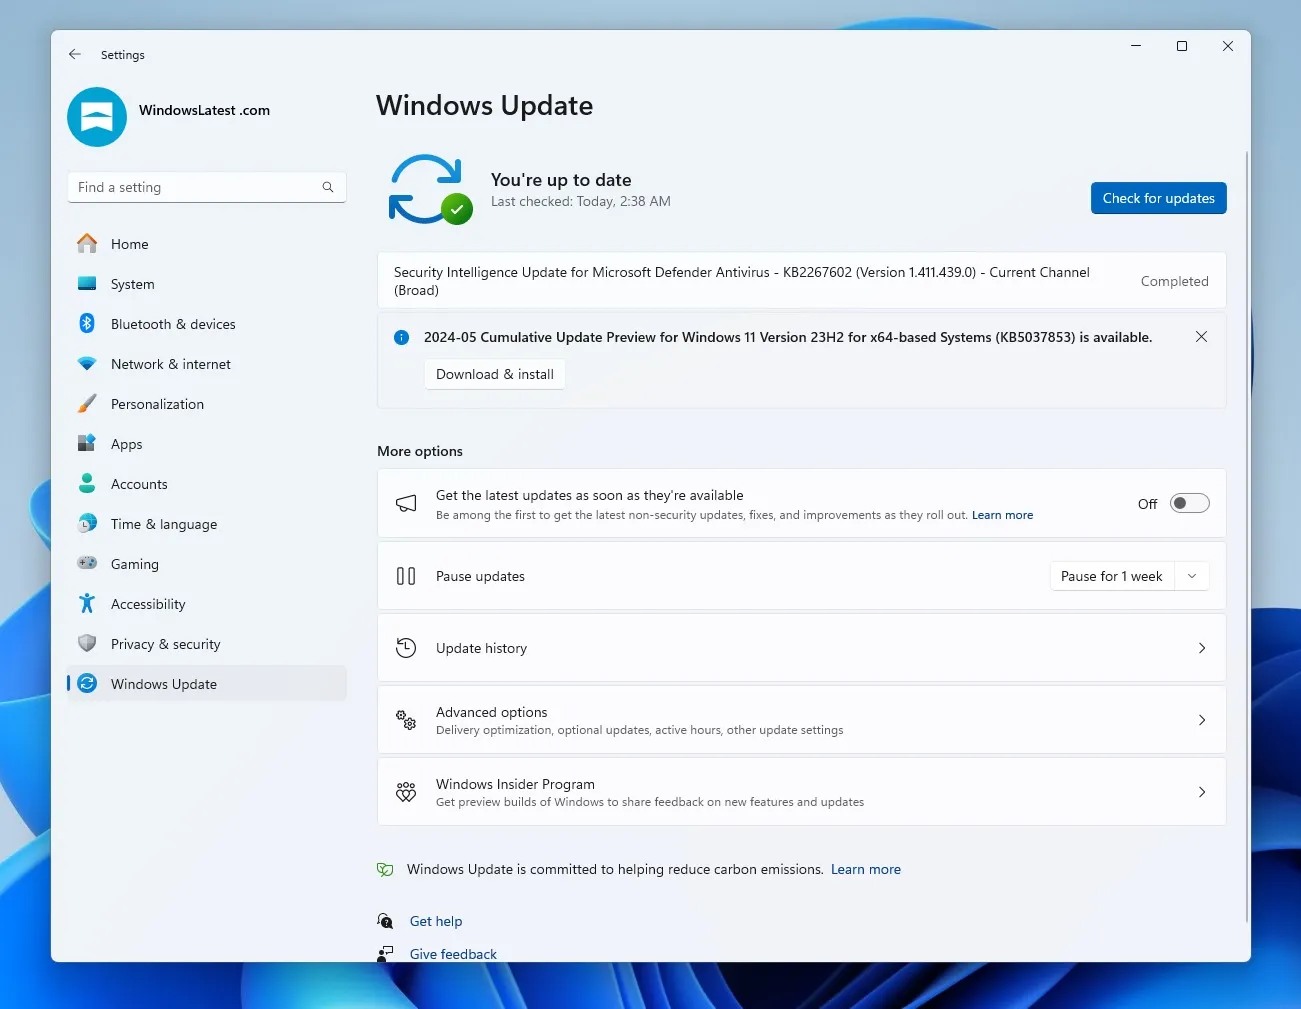 Preview van cumulatieve update 2024-05 voor Windows 11 versie 23H2 voor x64-systemen (KB5037853)